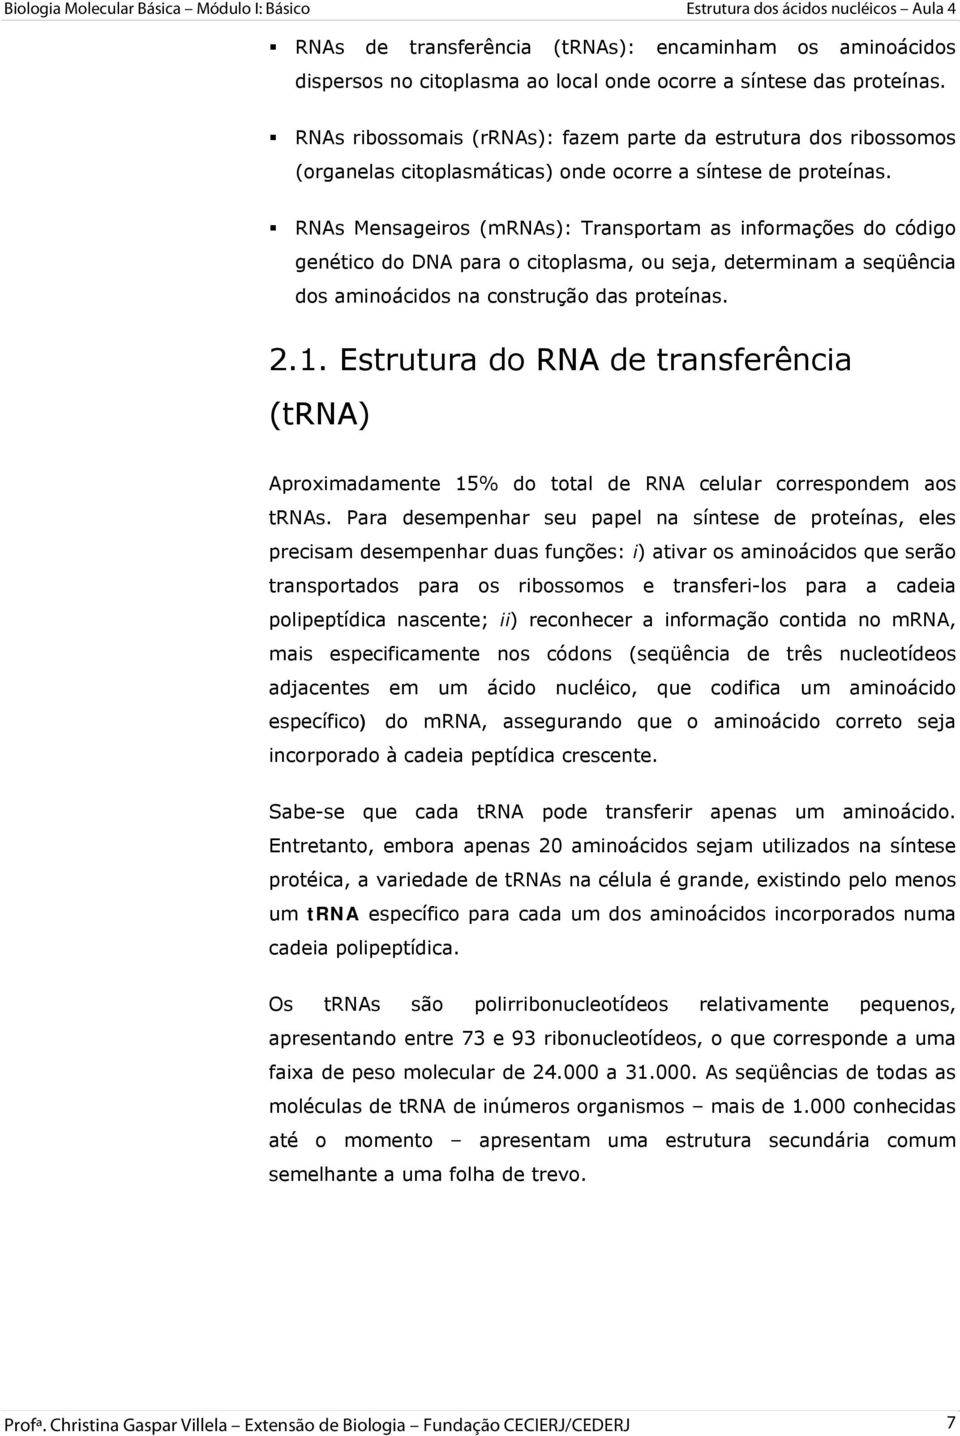 RNAs Mensageiros (mrnas): Transportam as informações do código genético do DNA para o citoplasma, ou seja, determinam a seqüência dos aminoácidos na construção das proteínas. 2.1.